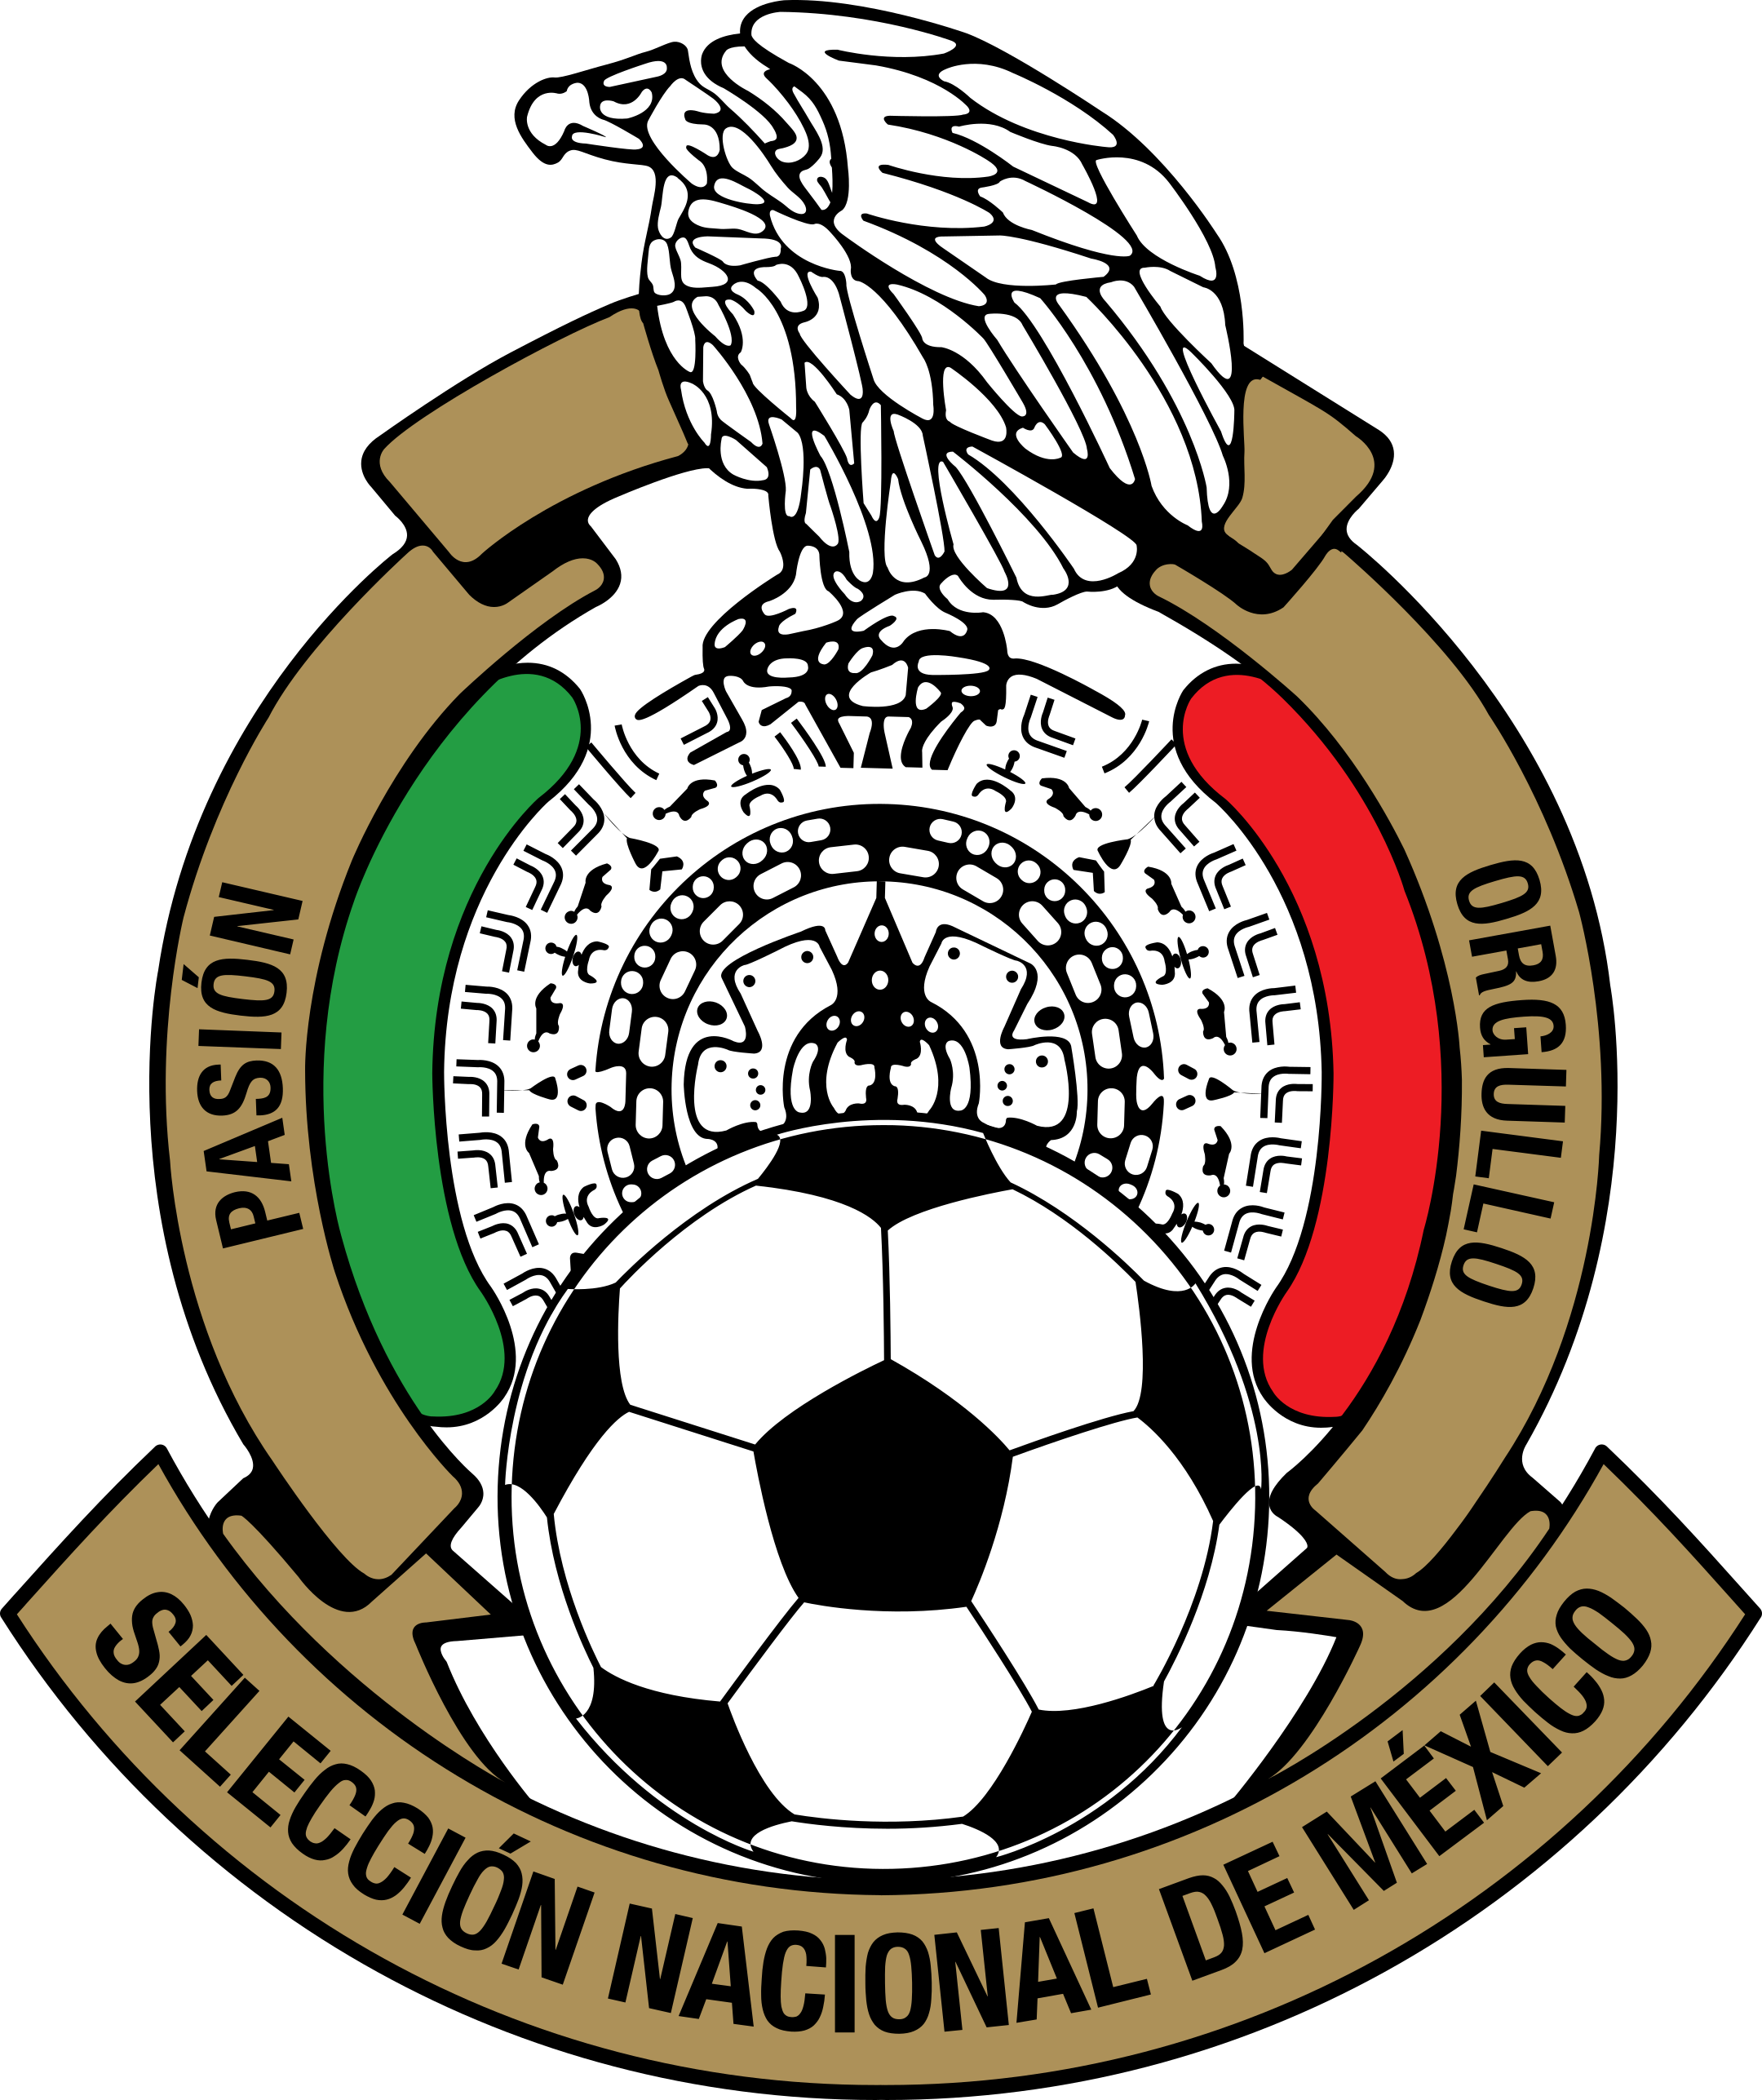 fmf seleccion de mexico logo 1 - Mexico National Football Team Logo